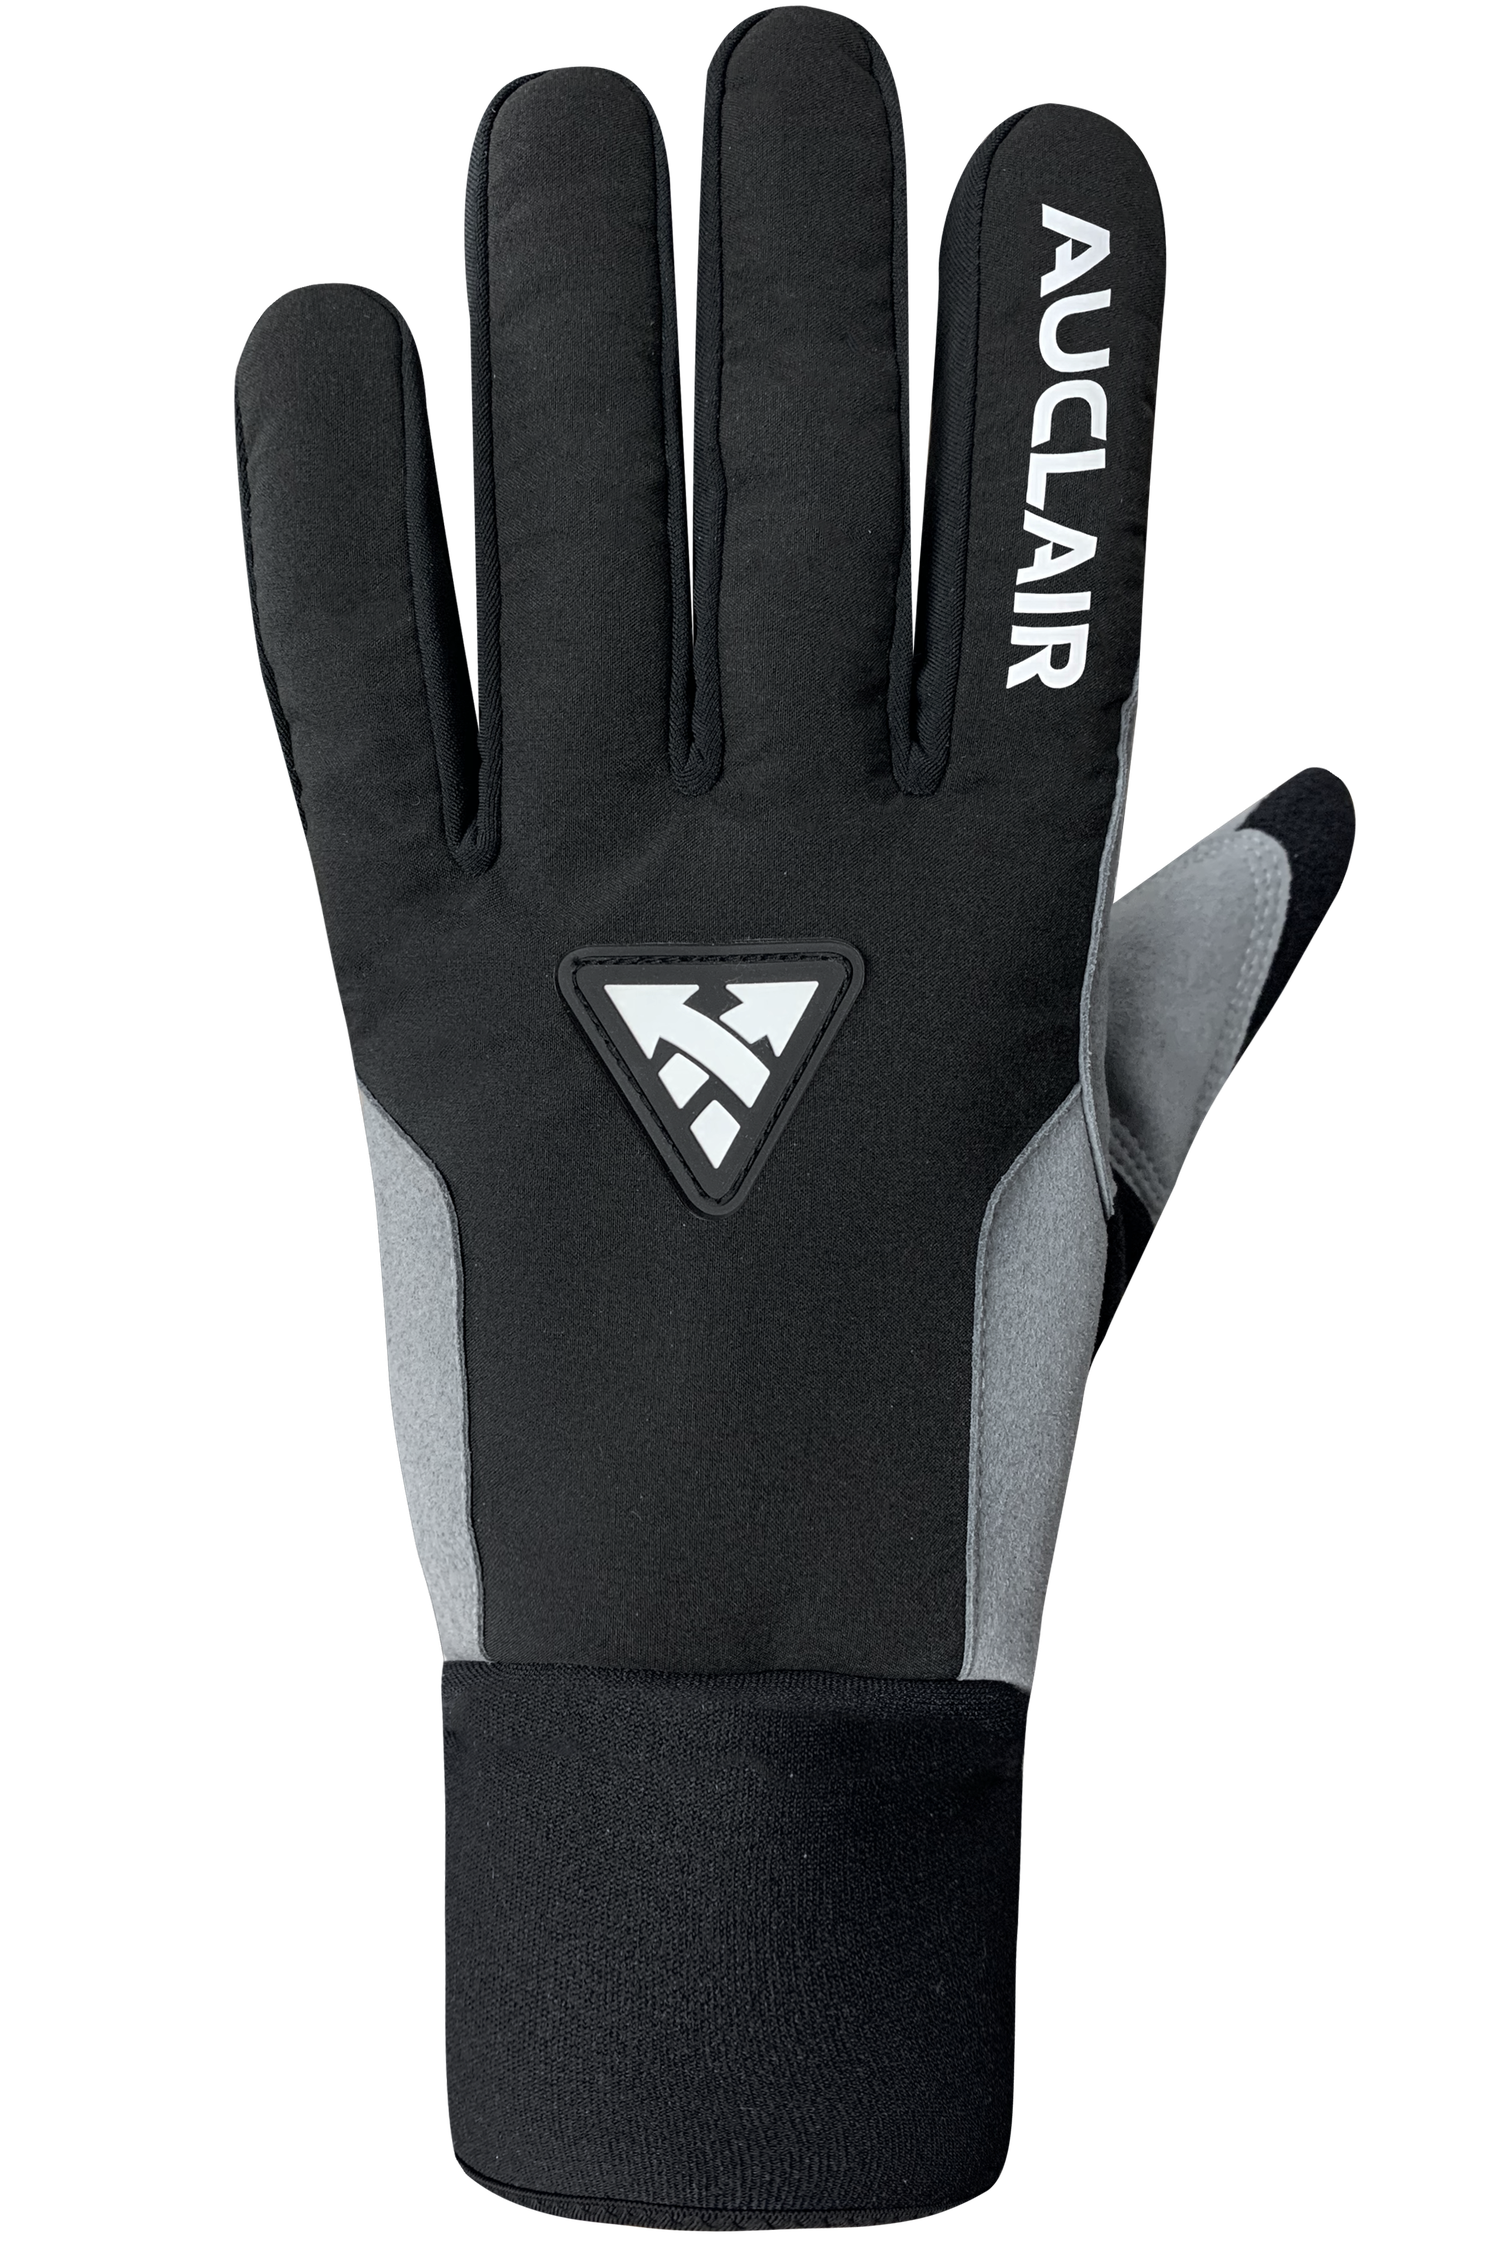 Stellar 2.0 Gloves - Women-Glove-Auclair Sports-S-Black/Grey-Auclair Sports